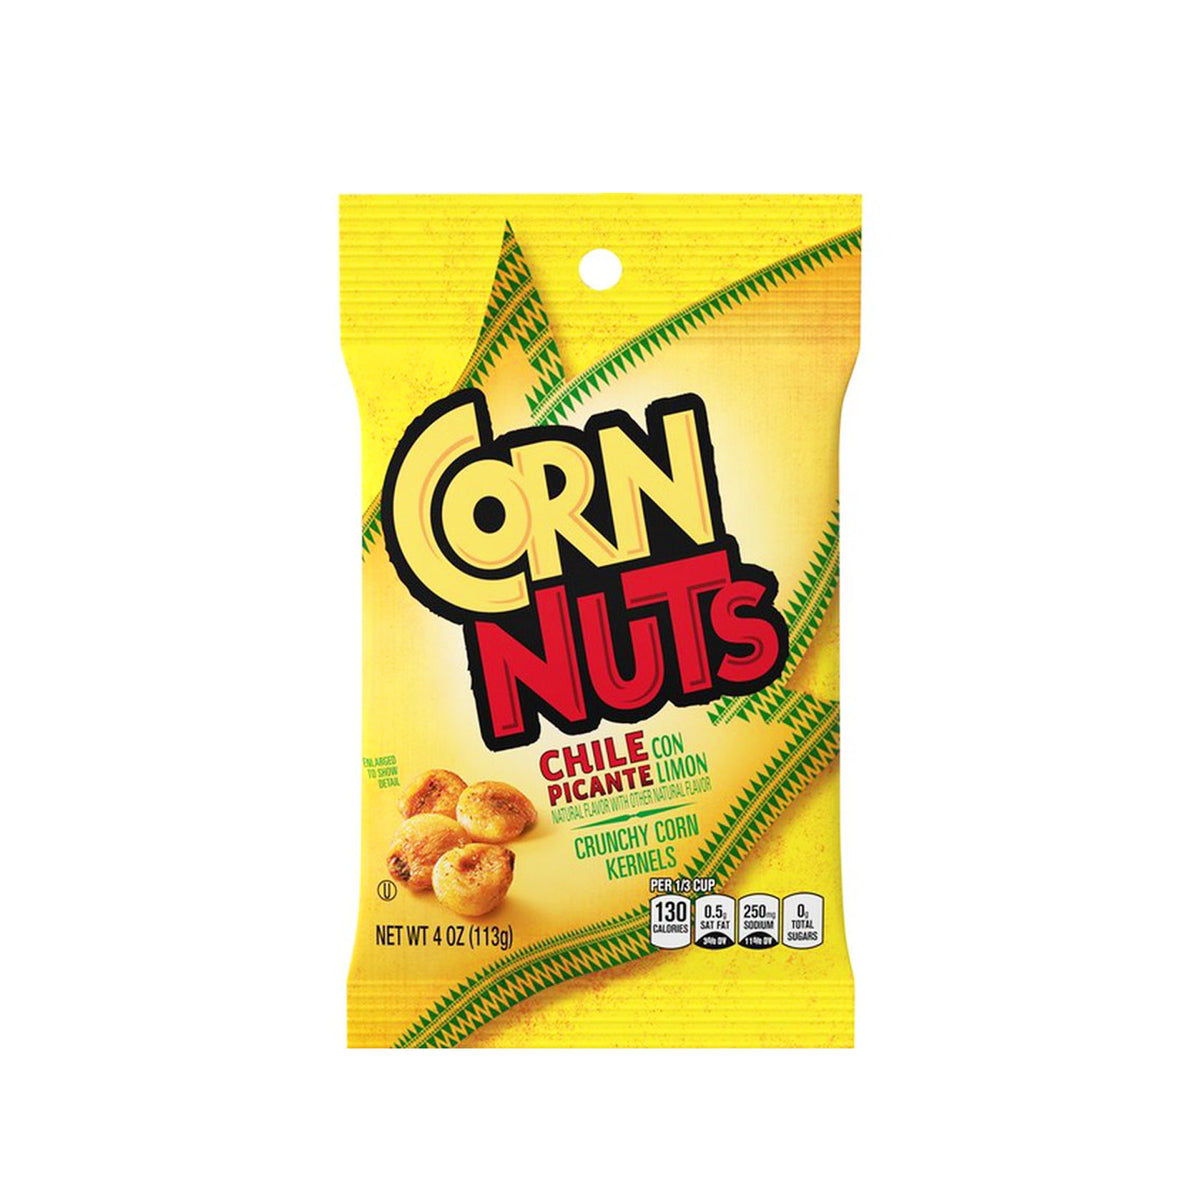 corn nuts crunch corn kernels chile picante - 4oz